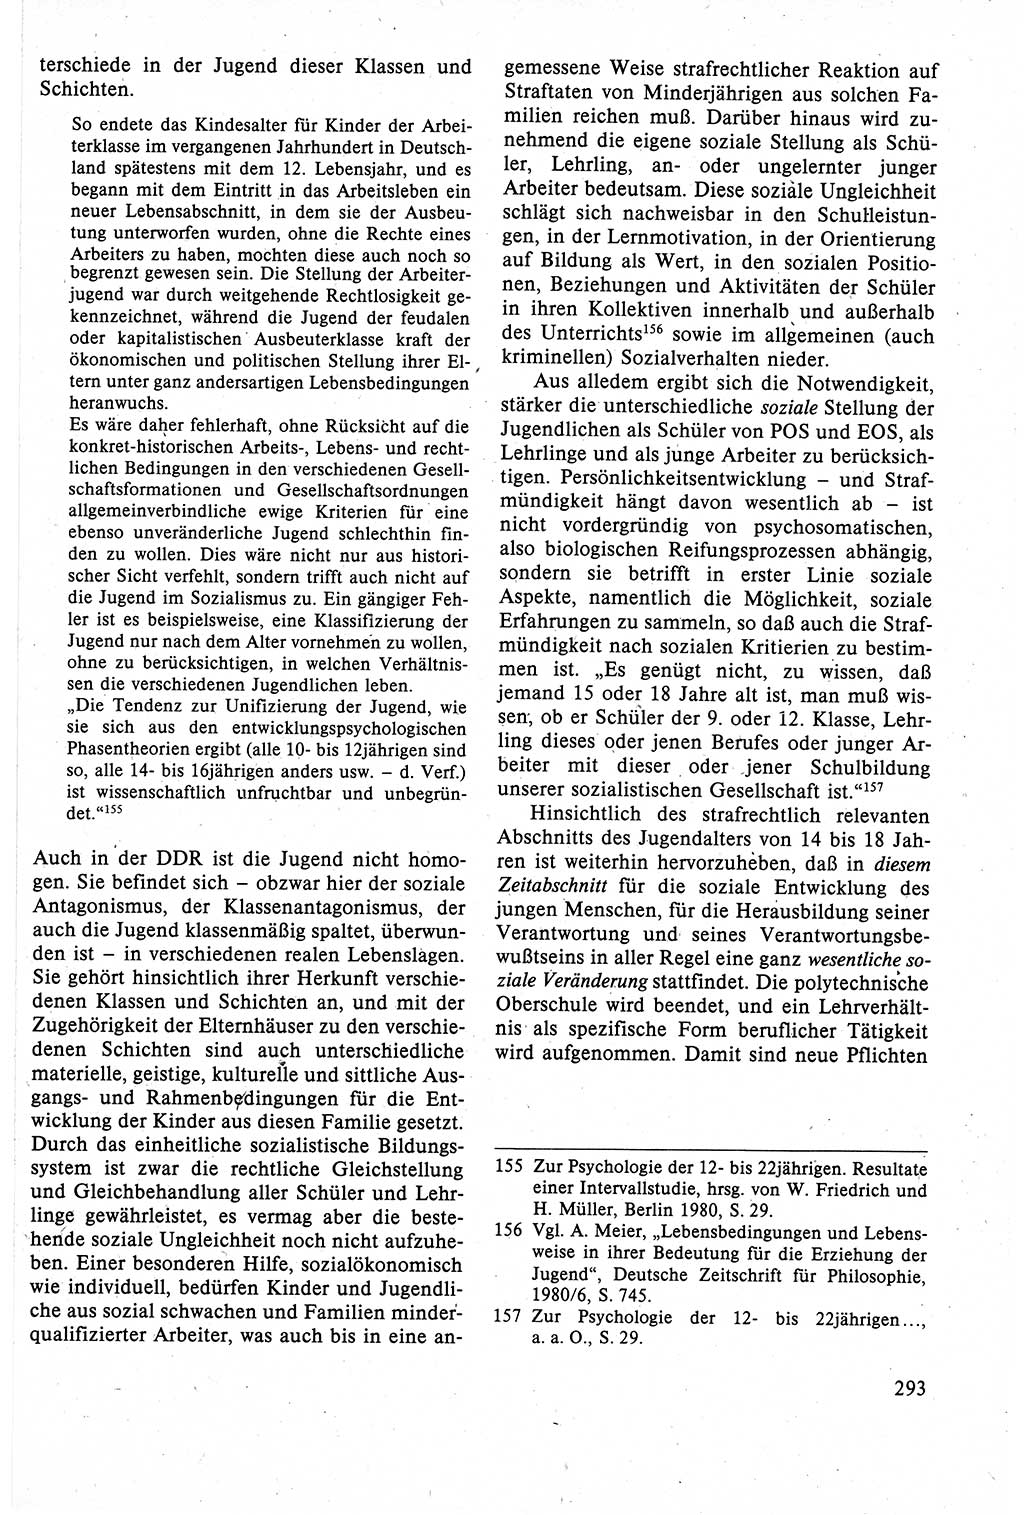 Strafrecht der DDR (Deutsche Demokratische Republik), Lehrbuch 1988, Seite 293 (Strafr. DDR Lb. 1988, S. 293)